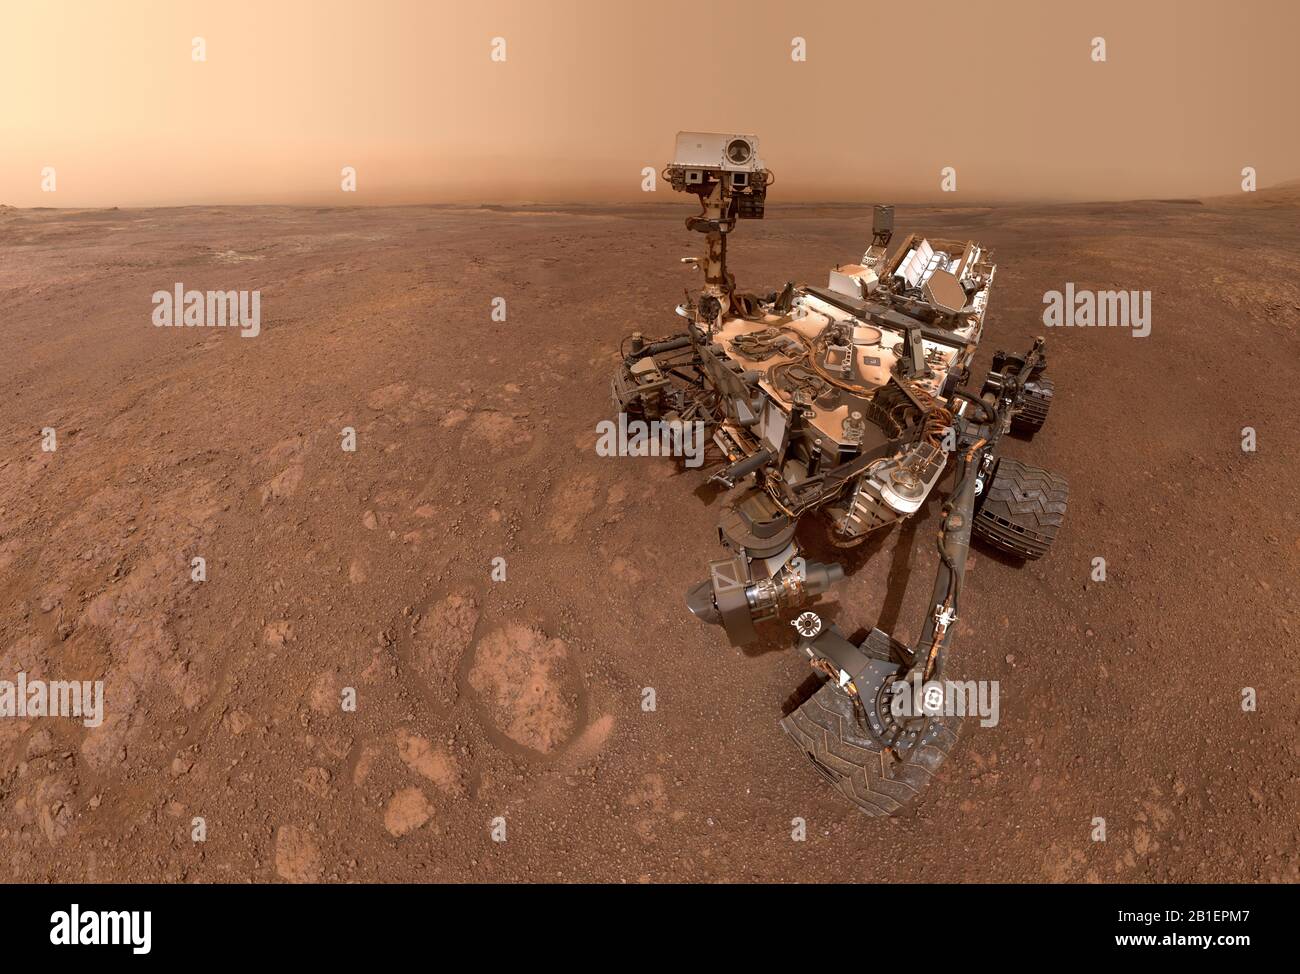 Marte - 15 gennaio 2019 - un selfie preso dalla Curiosity Mars rover della NASA su Sol 2291 (15 gennaio) presso il sito di perforazione 'Rock Hall', situato su vera Rubin Ridge Foto Stock